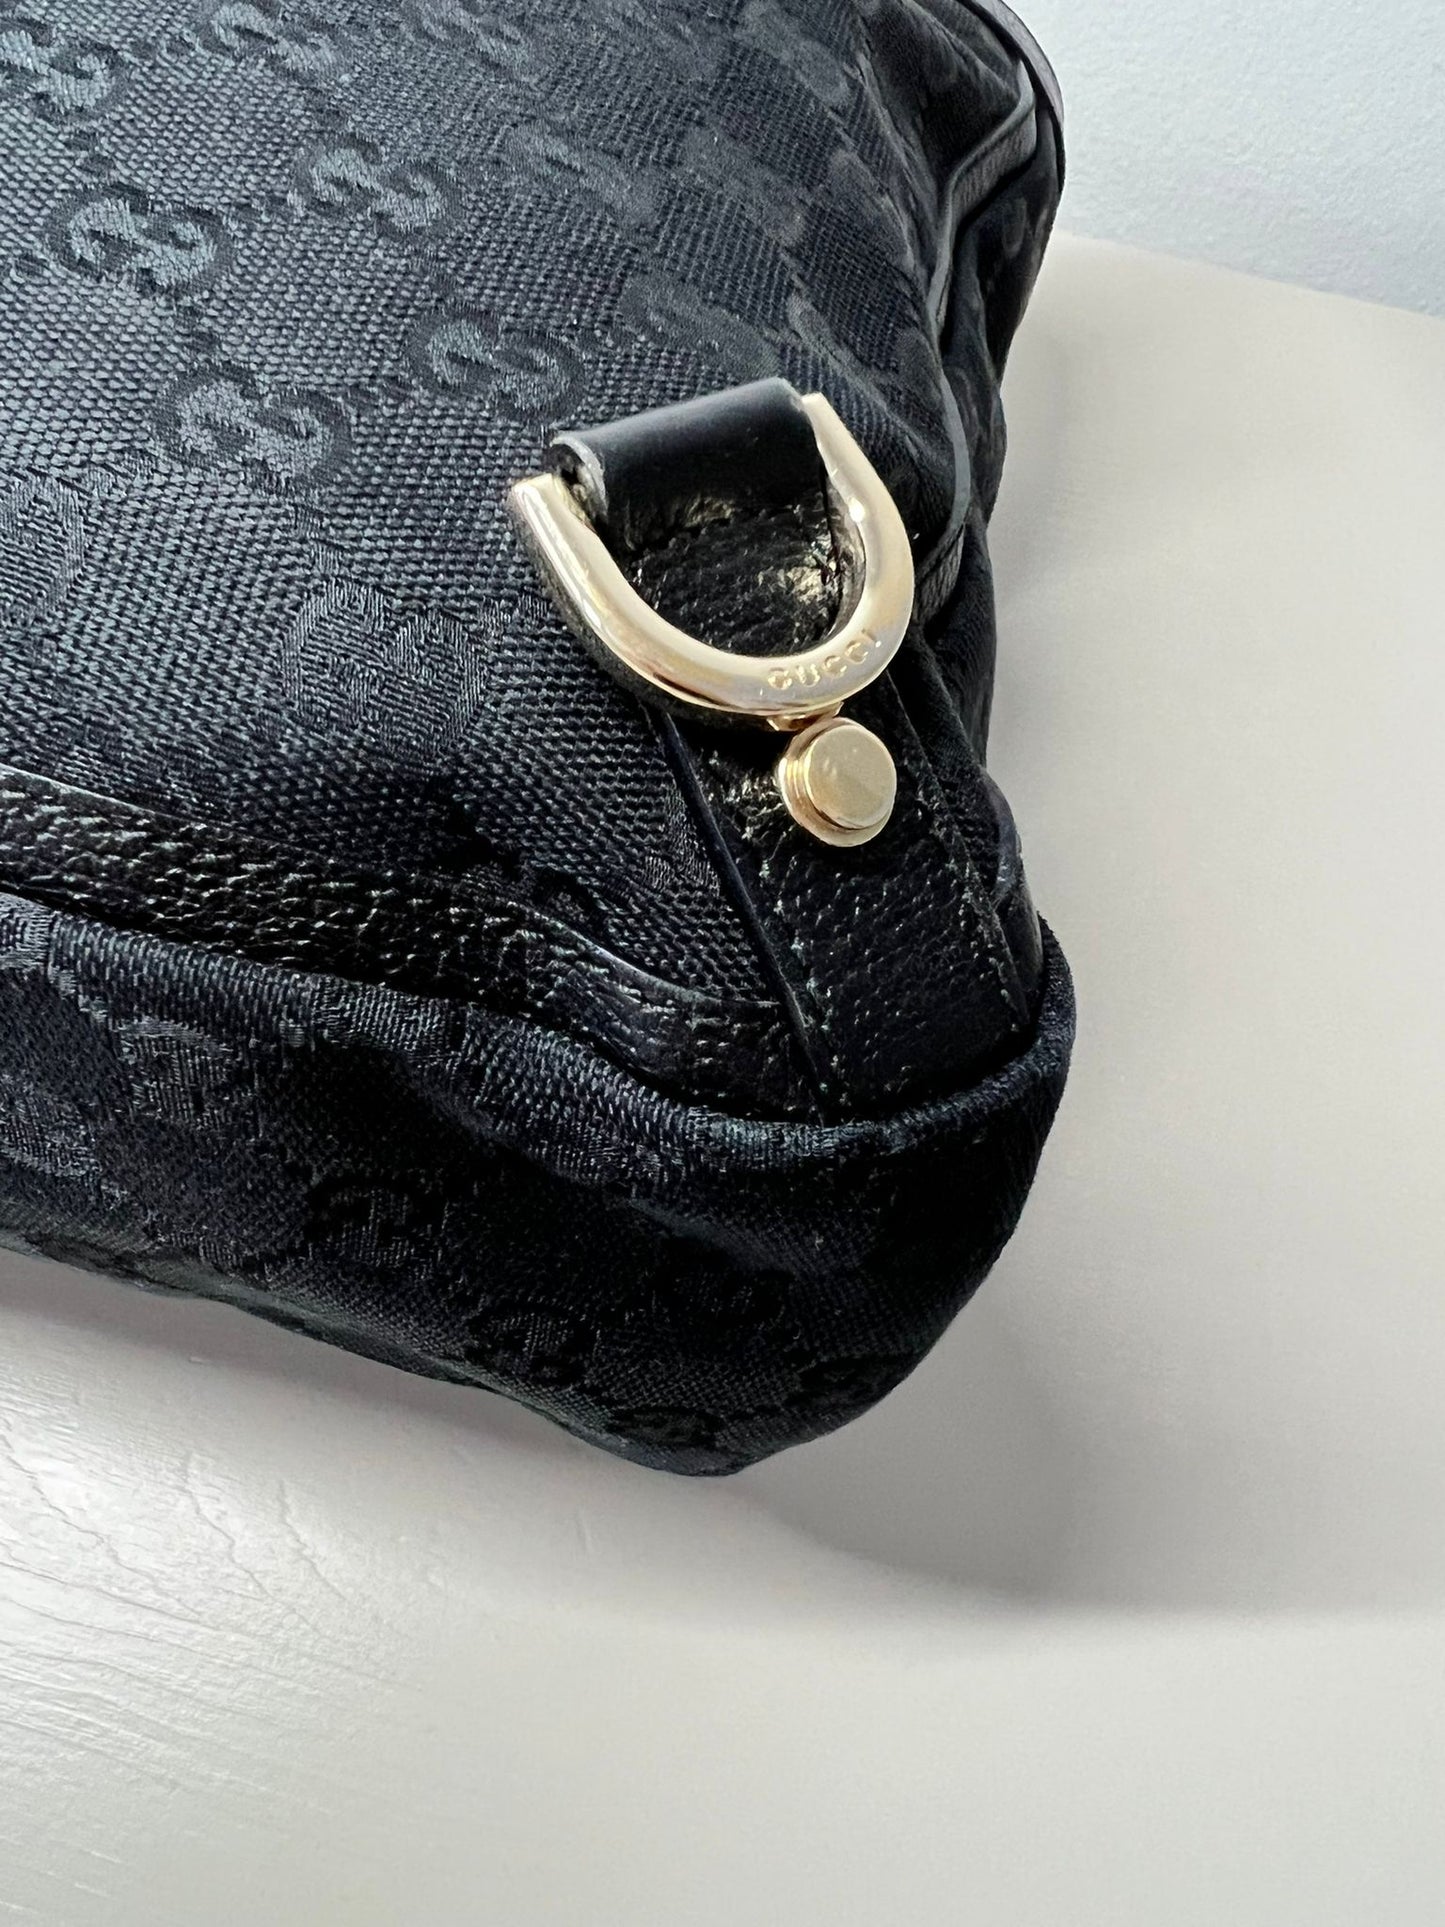 Gucci GG Abbey Canvas Tote Handbag